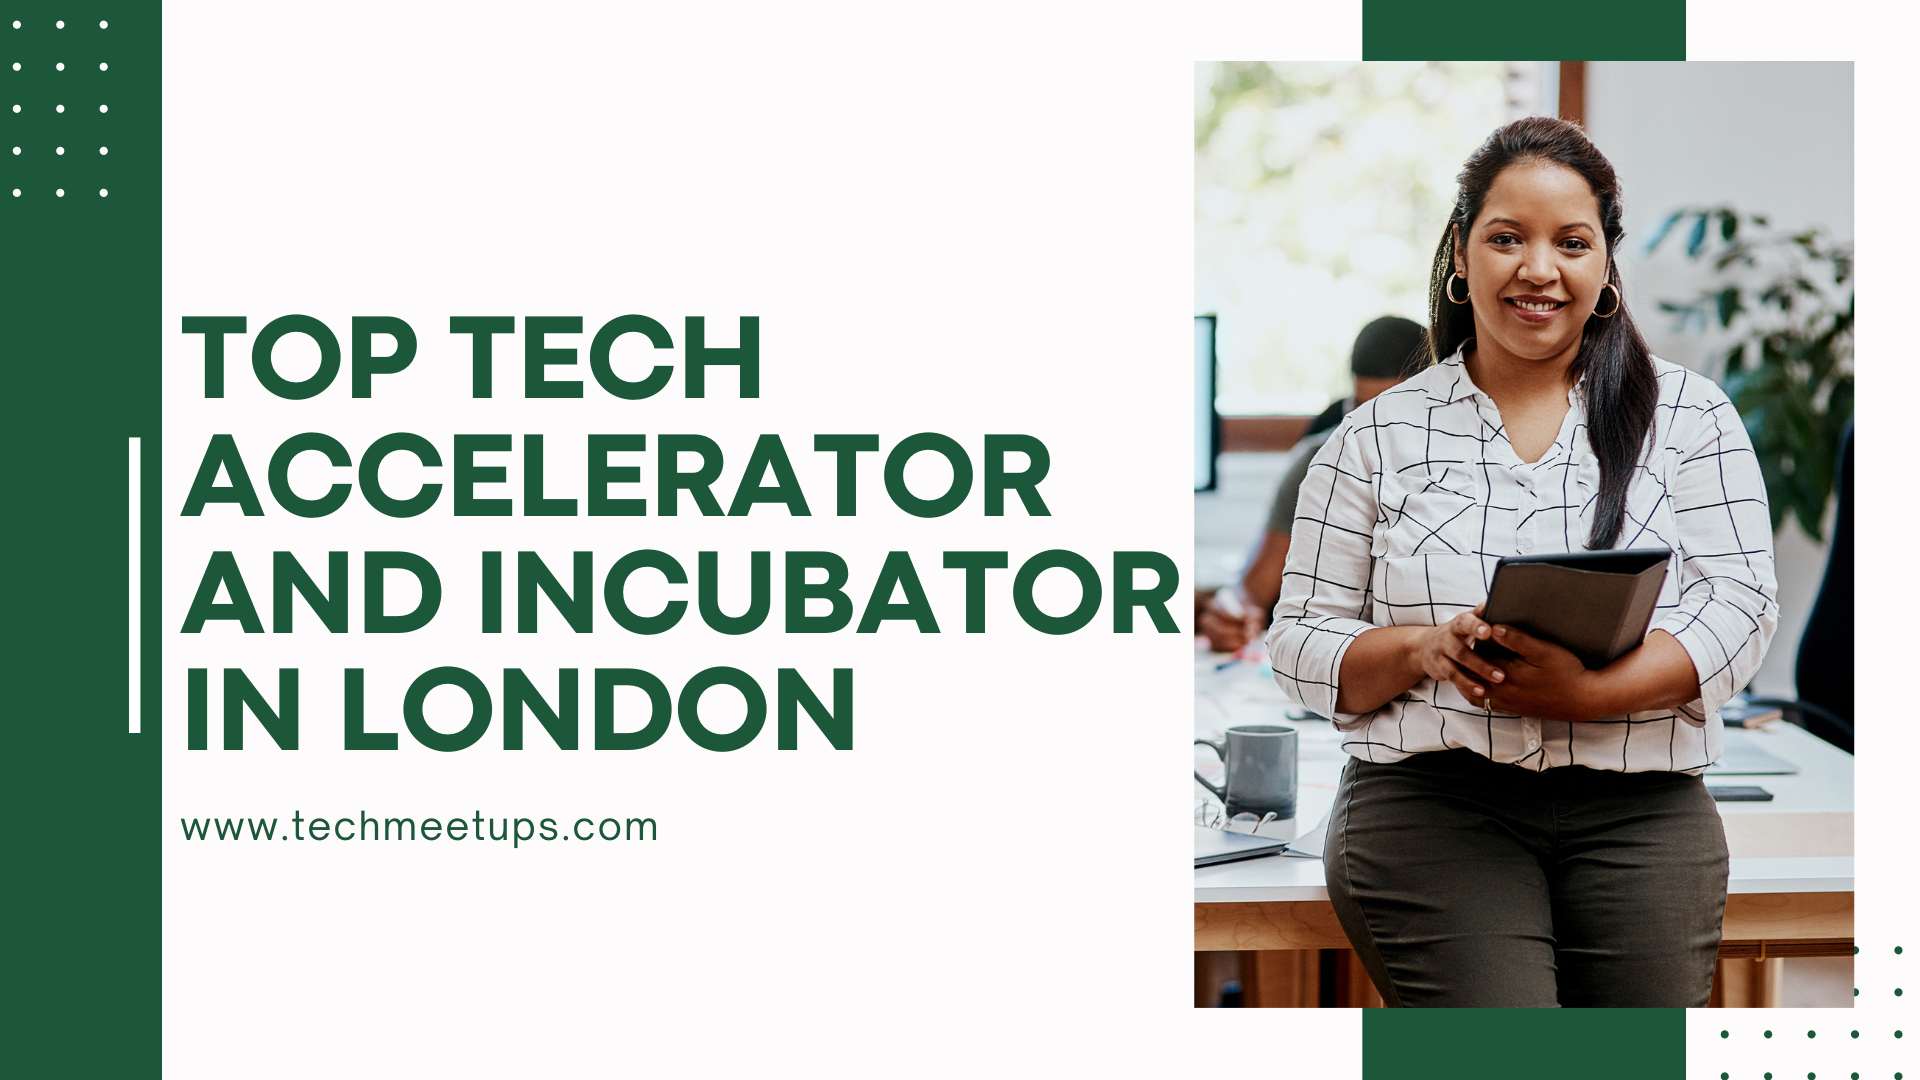 Spotlight on London's Top Tech Accelerator and Incubator